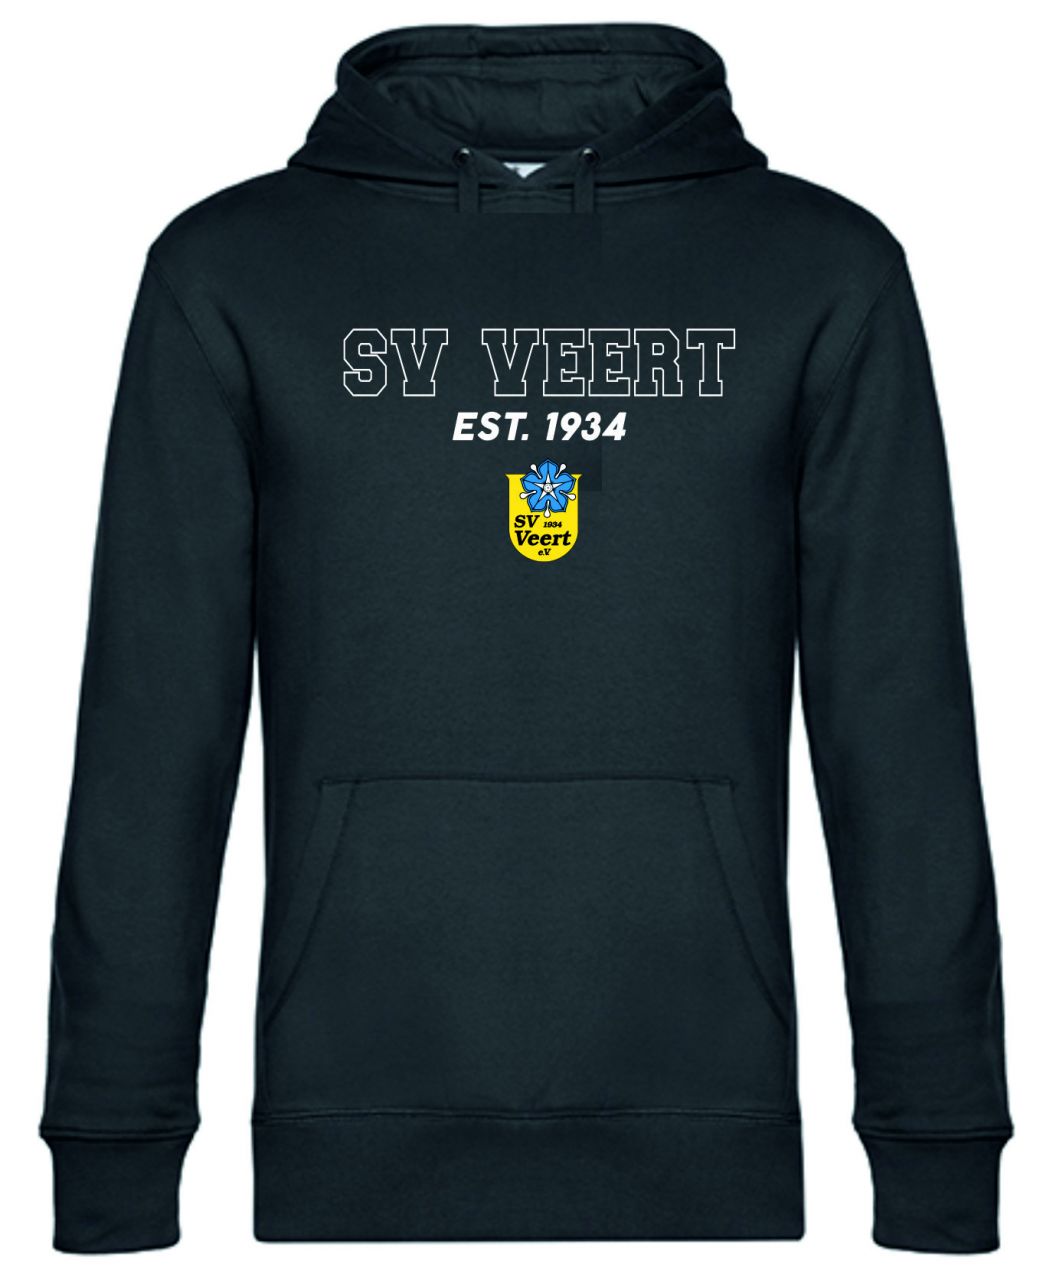 Hoody-SV-Veert-EST-1934